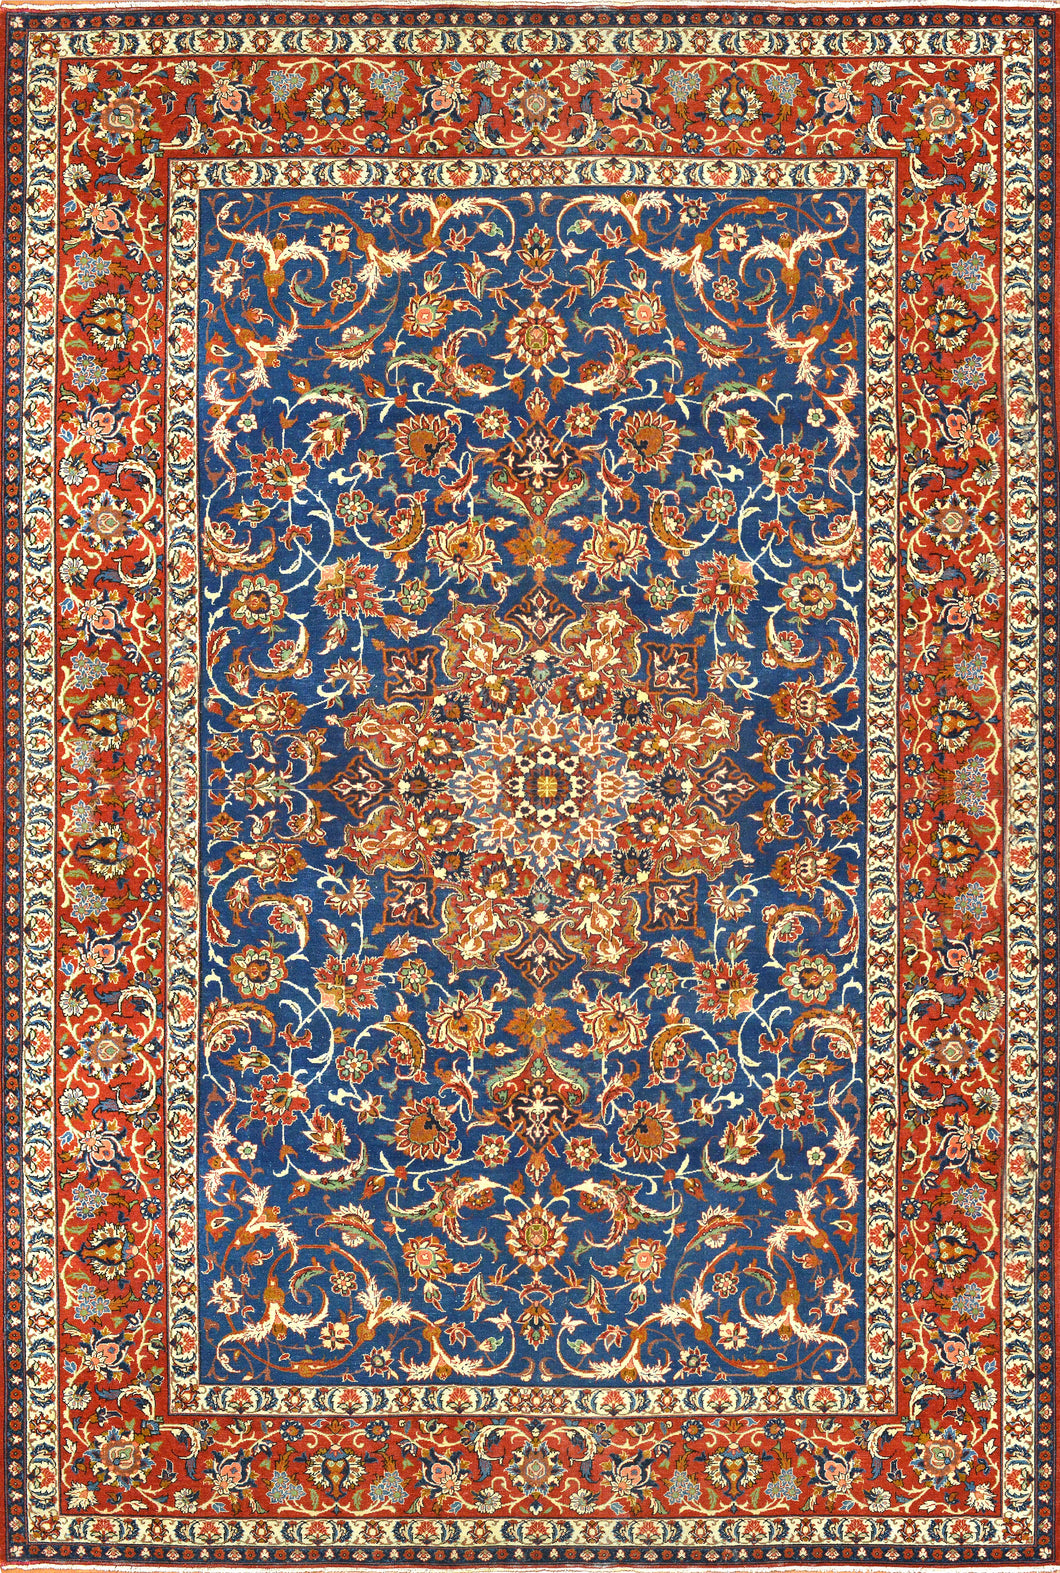 Antique Isfahan Persian Rug, Circa 1890